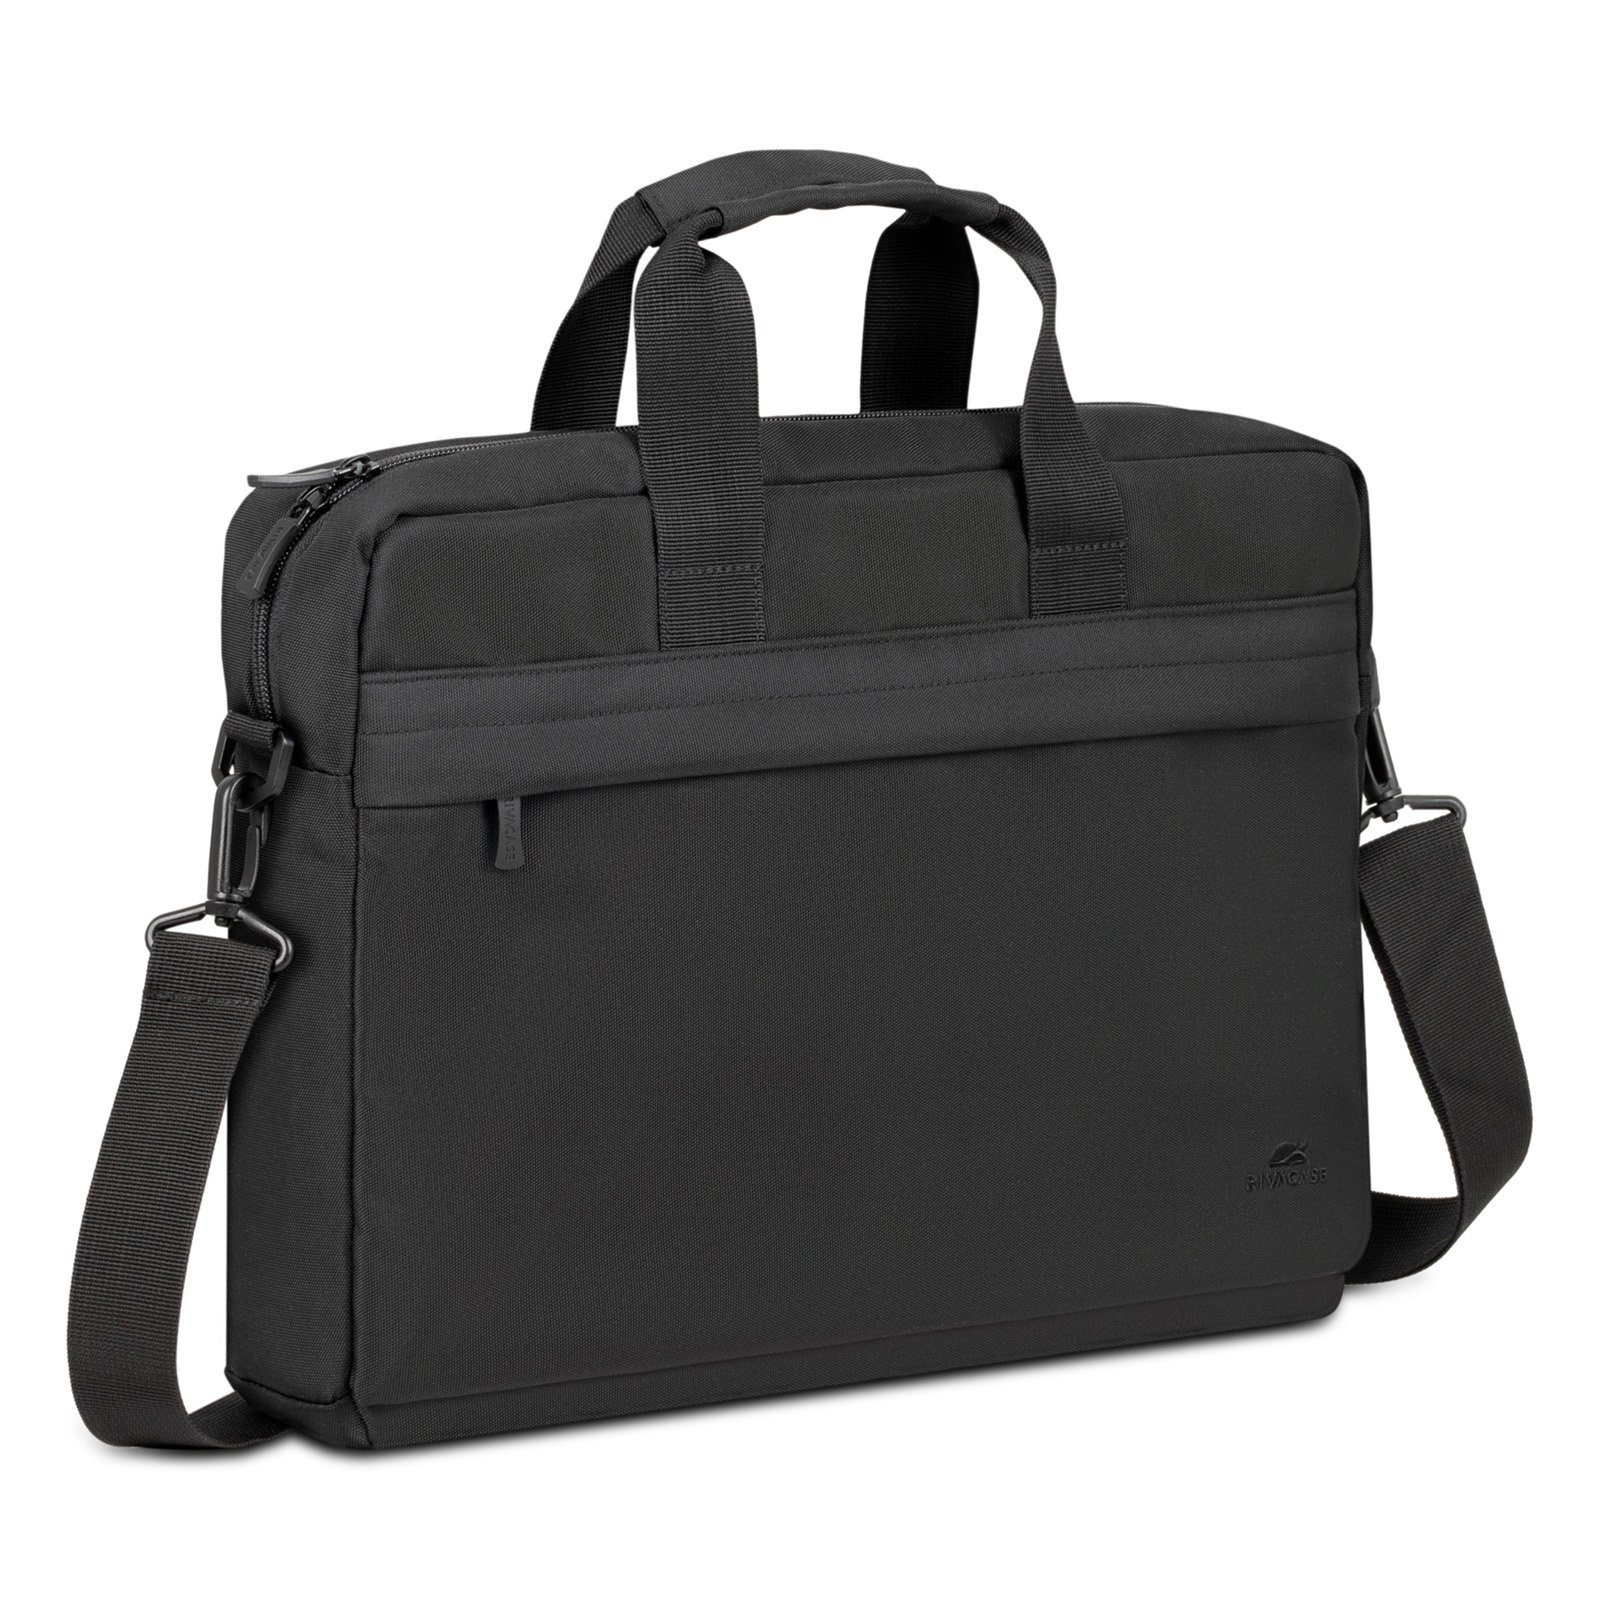 Rivacase Rucksack Laptoptasche 14 Zoll - wasserabweisende Aktentasche für Business, Uni black